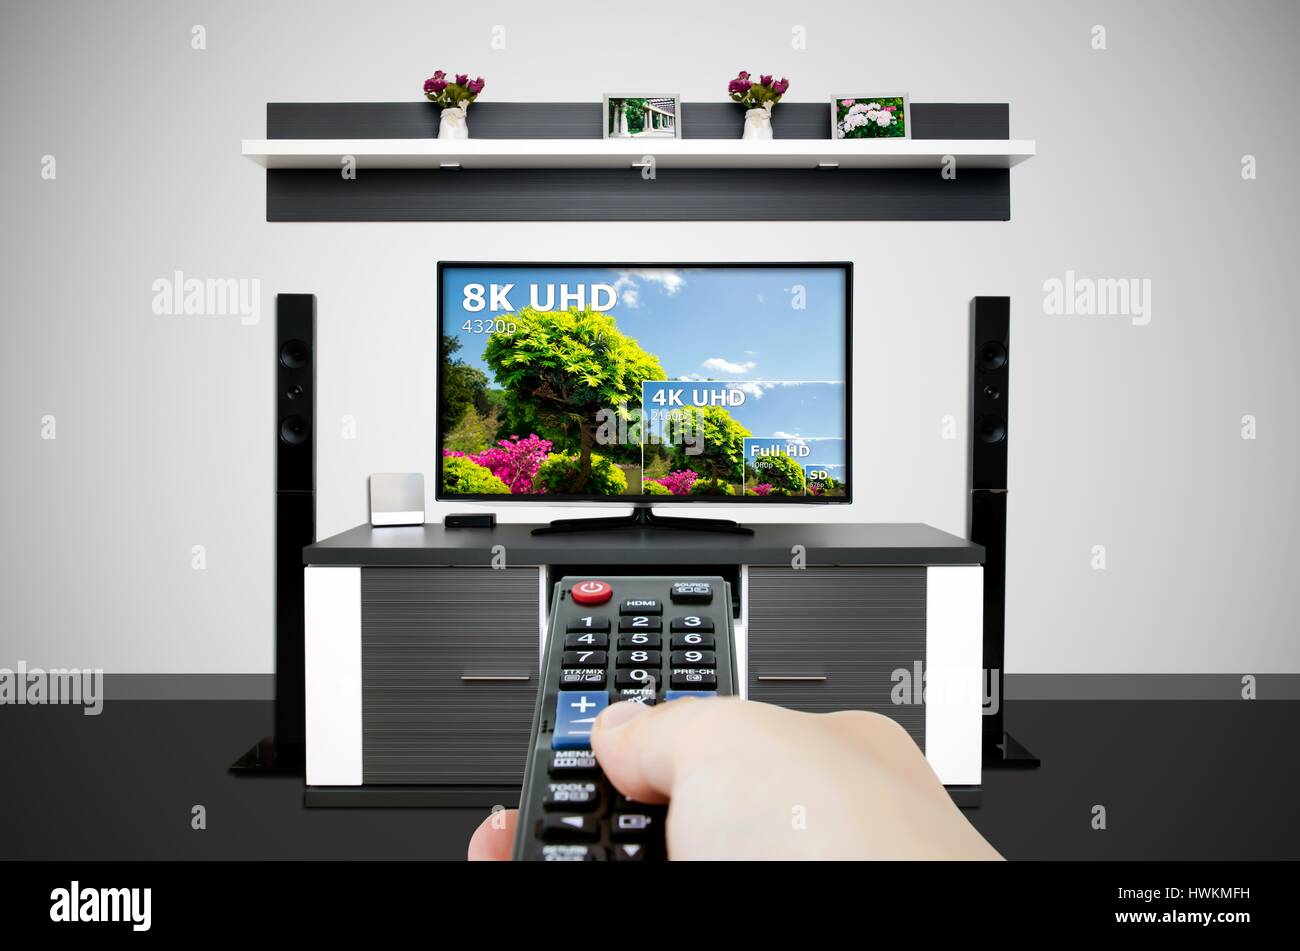 Regarder la télévision dans la salle de télévision. Comparer la télévision de 8k uhd. résolution résolution de télévision hd concept ultra Banque D'Images